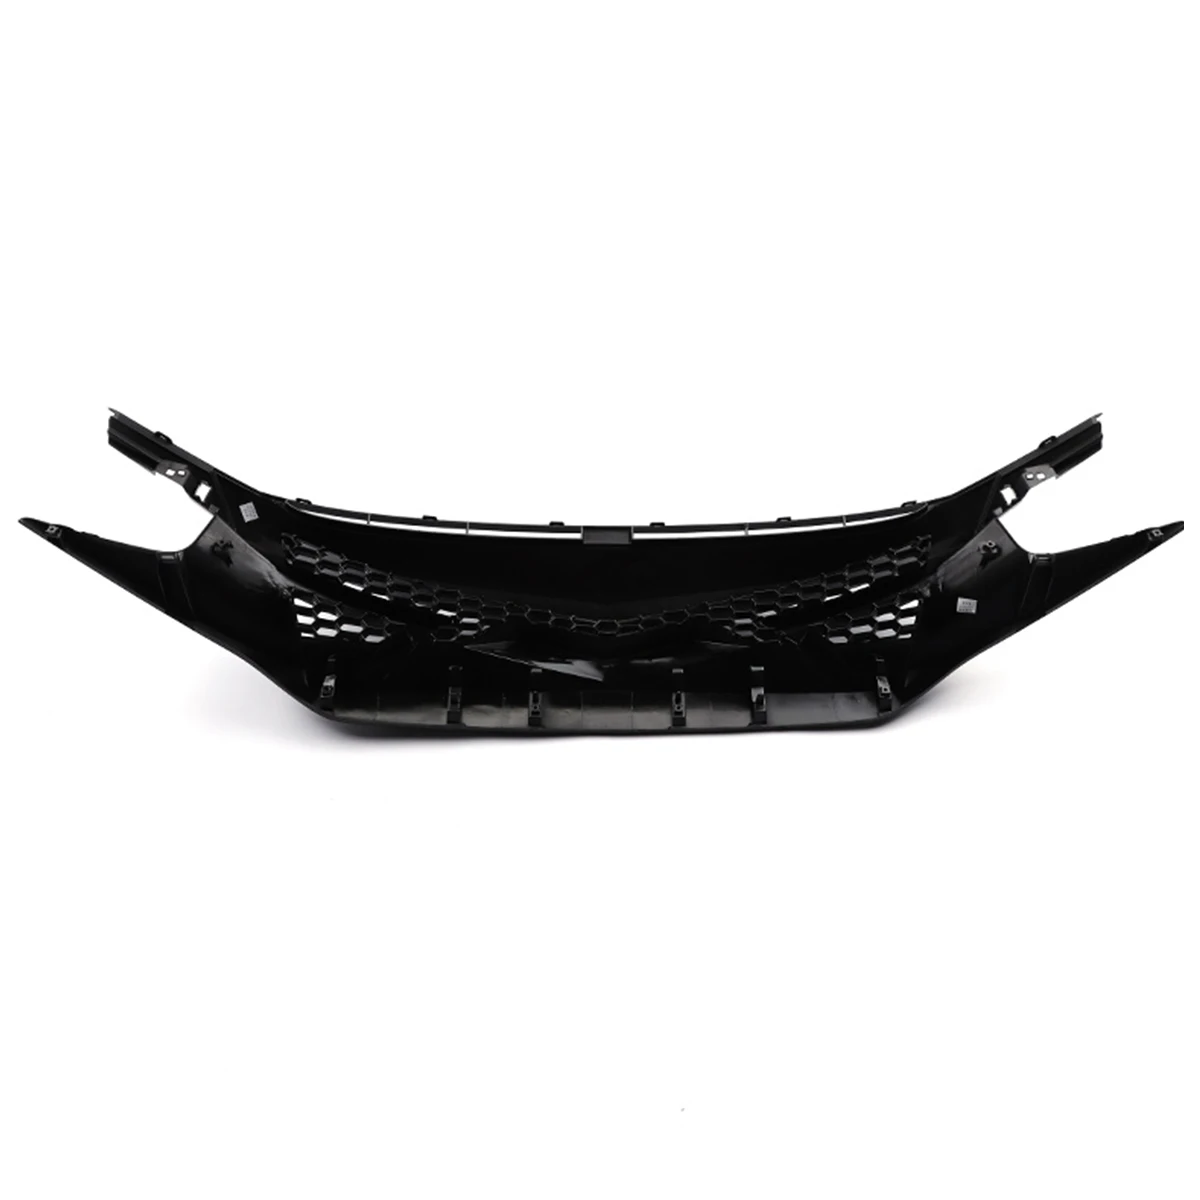 Глянцевая черная передняя решетка гриль бампера сотовая сетка передняя решетка капота для Honda Для Civic 10th Gen боевой стиль